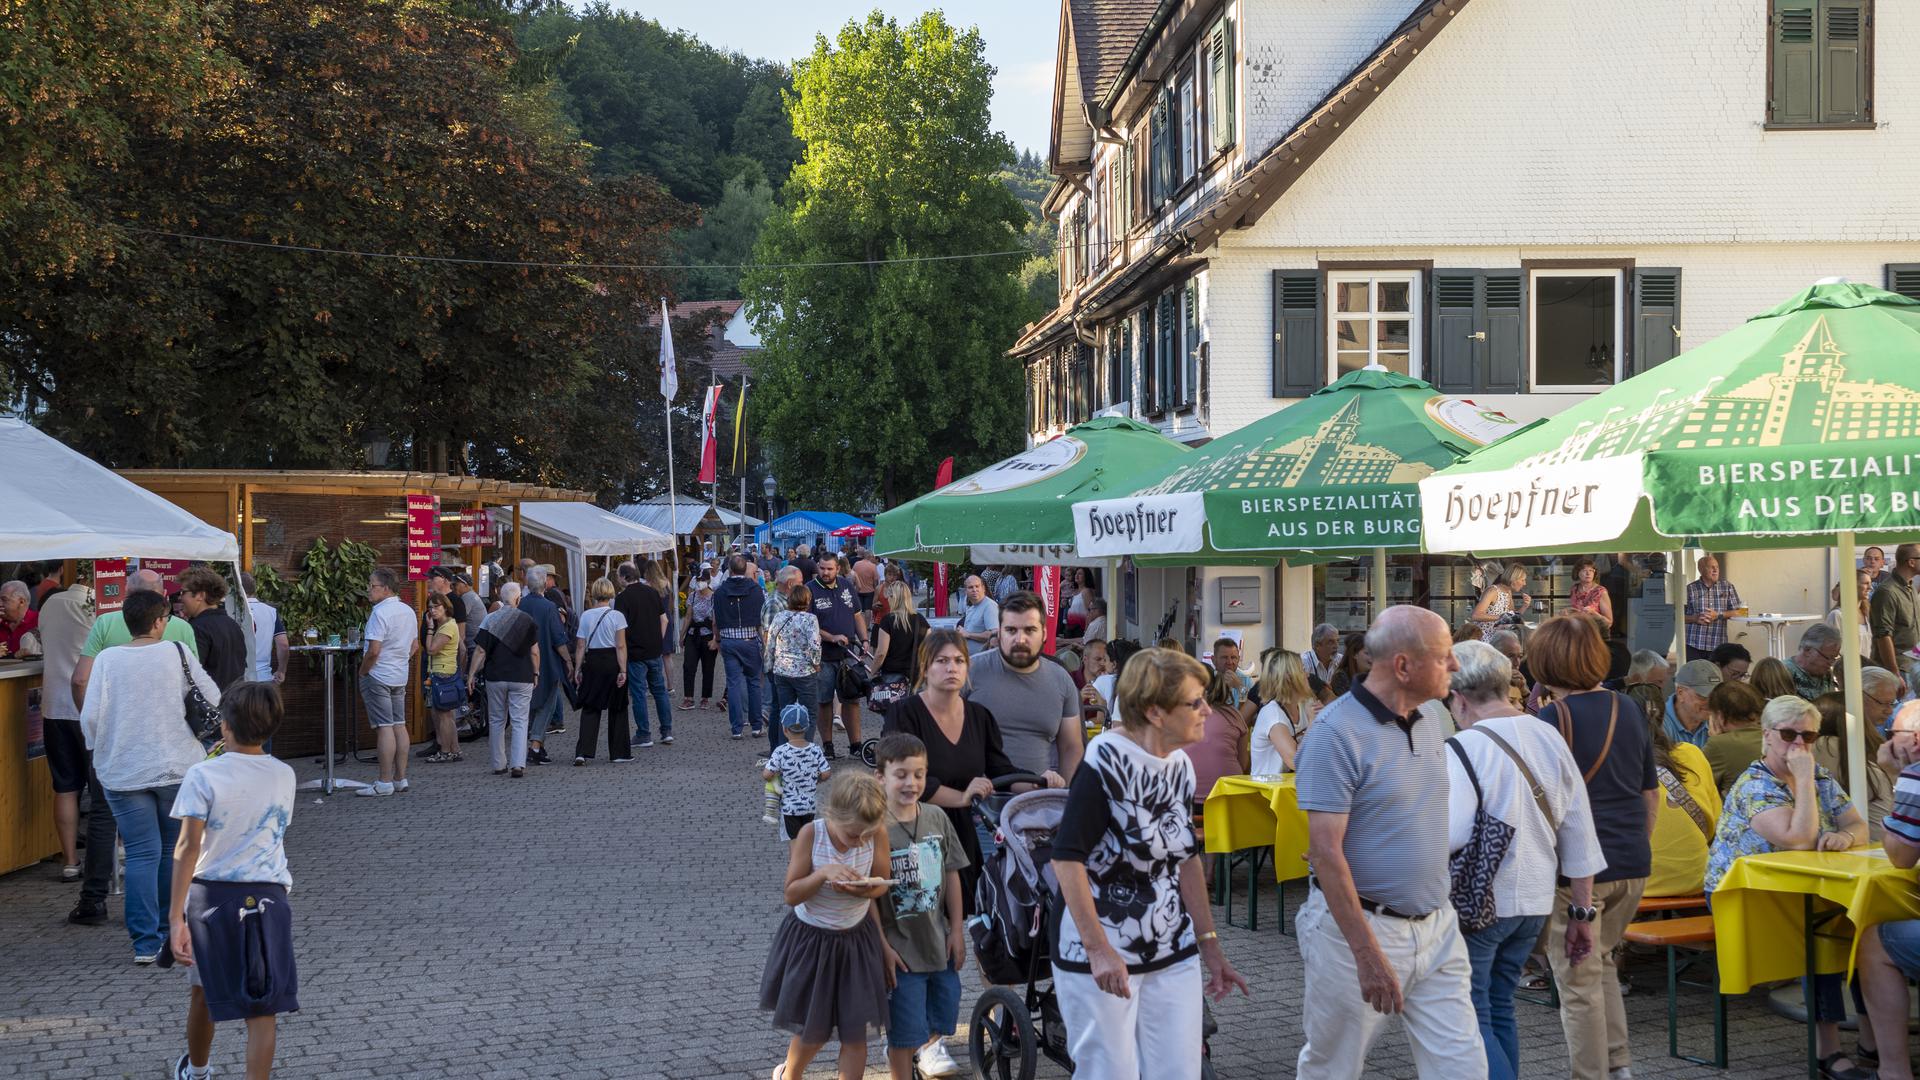 Klosterfest Bad Herrenalb